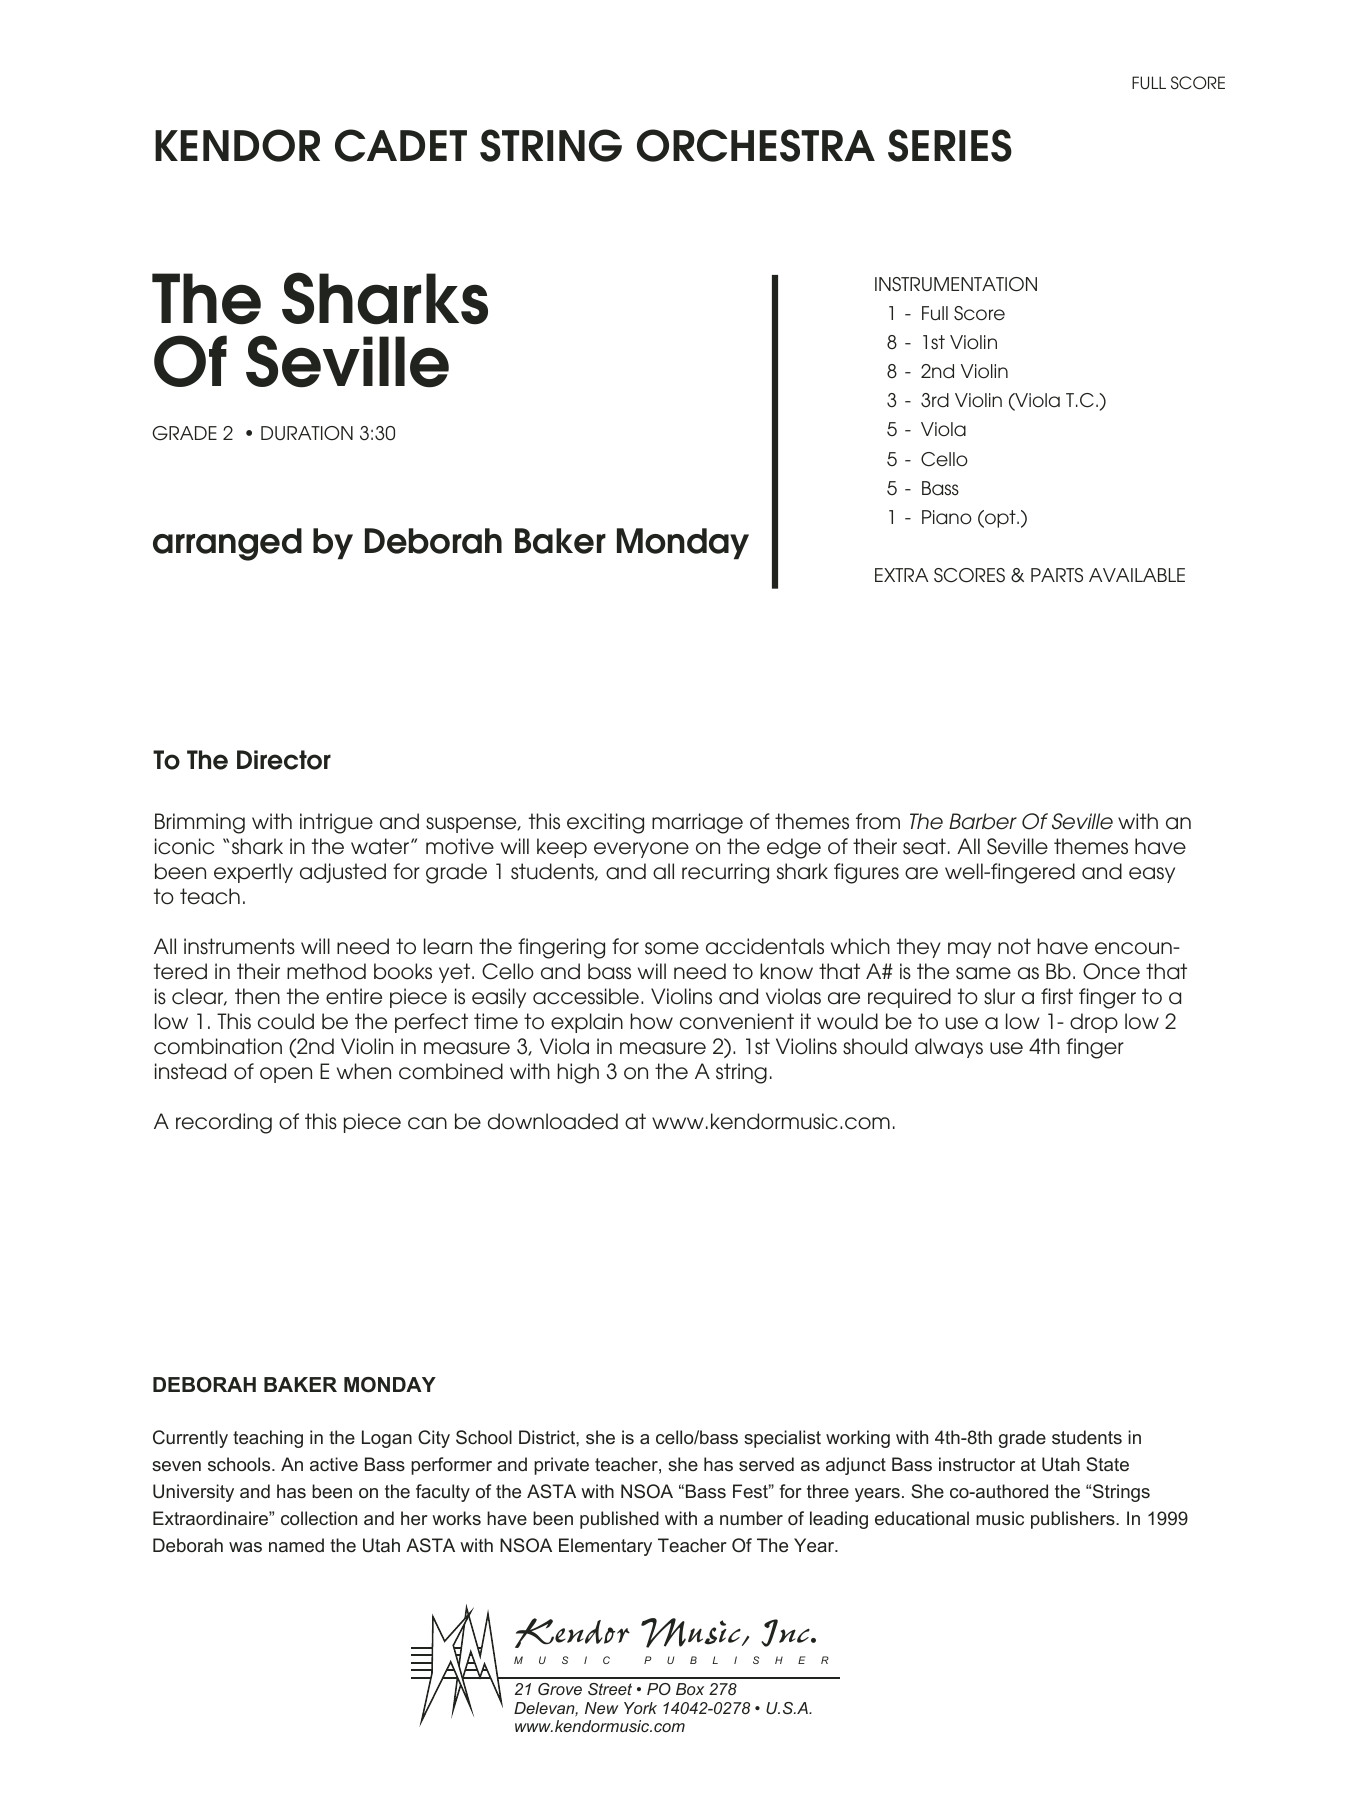 Download Deborah Baker Monday The Sharks Of Seville - Full Score Sheet Music